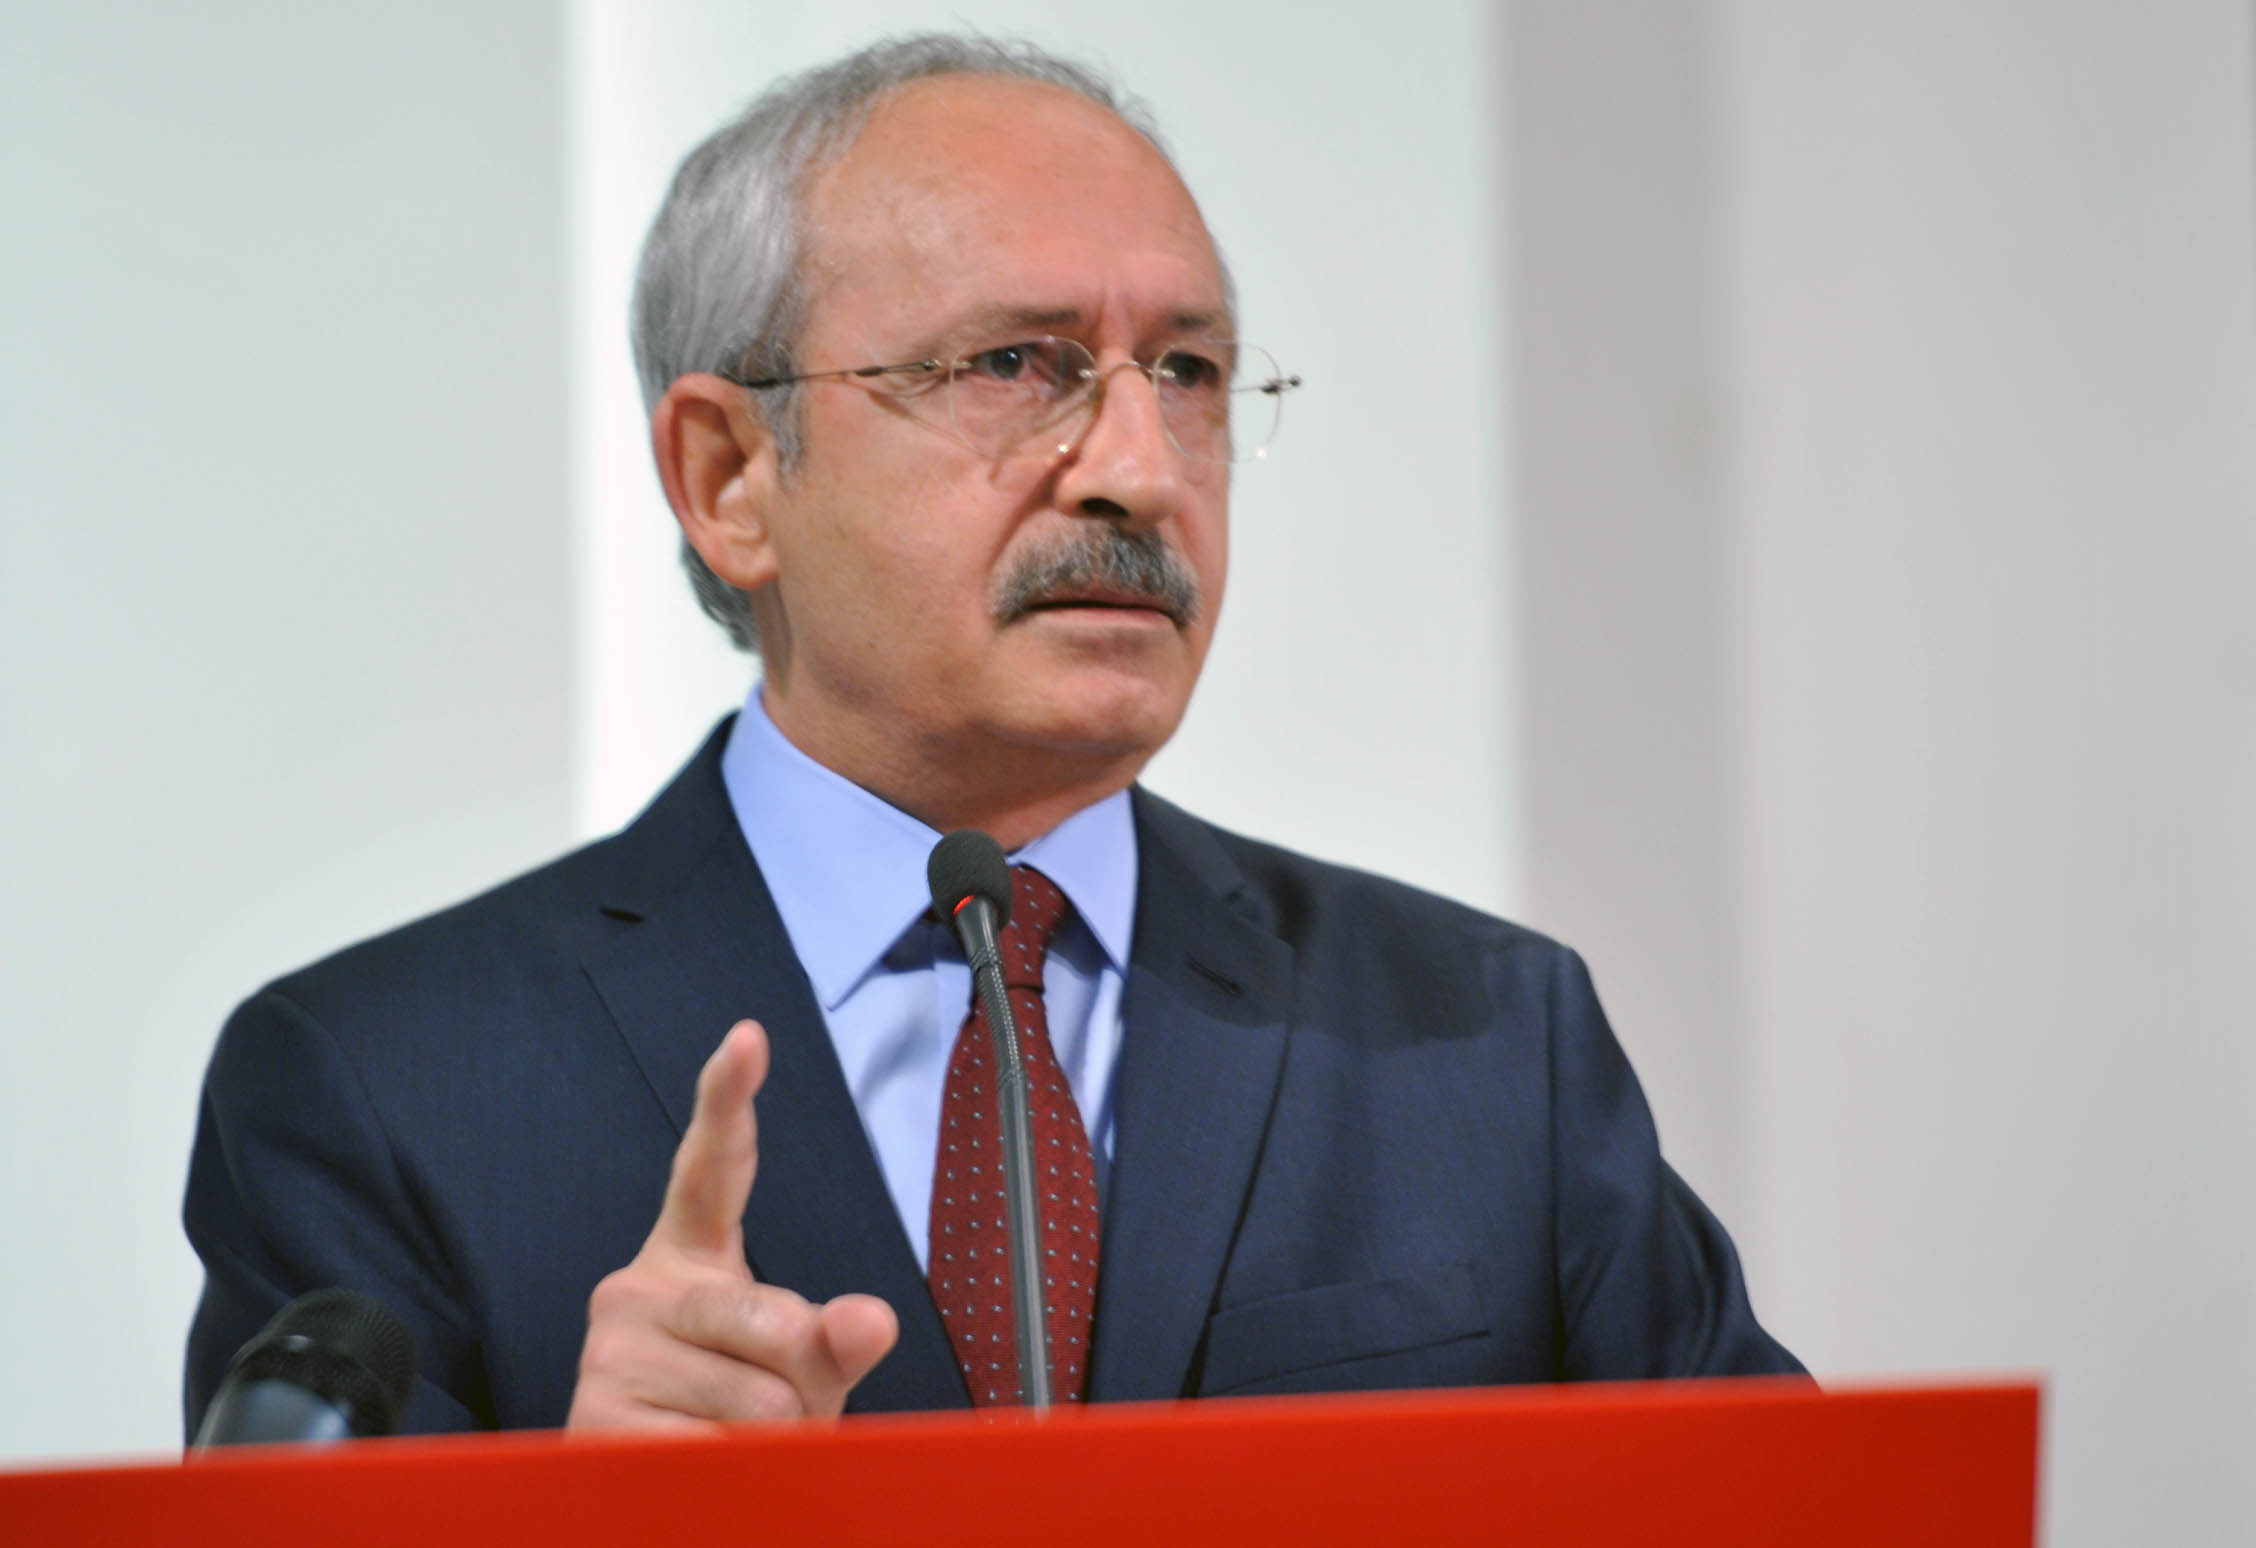 زعيم المعارضة التركية ينتقد توصية البرلمان الأوروبي بتعليق المفاوضات مع بلاده